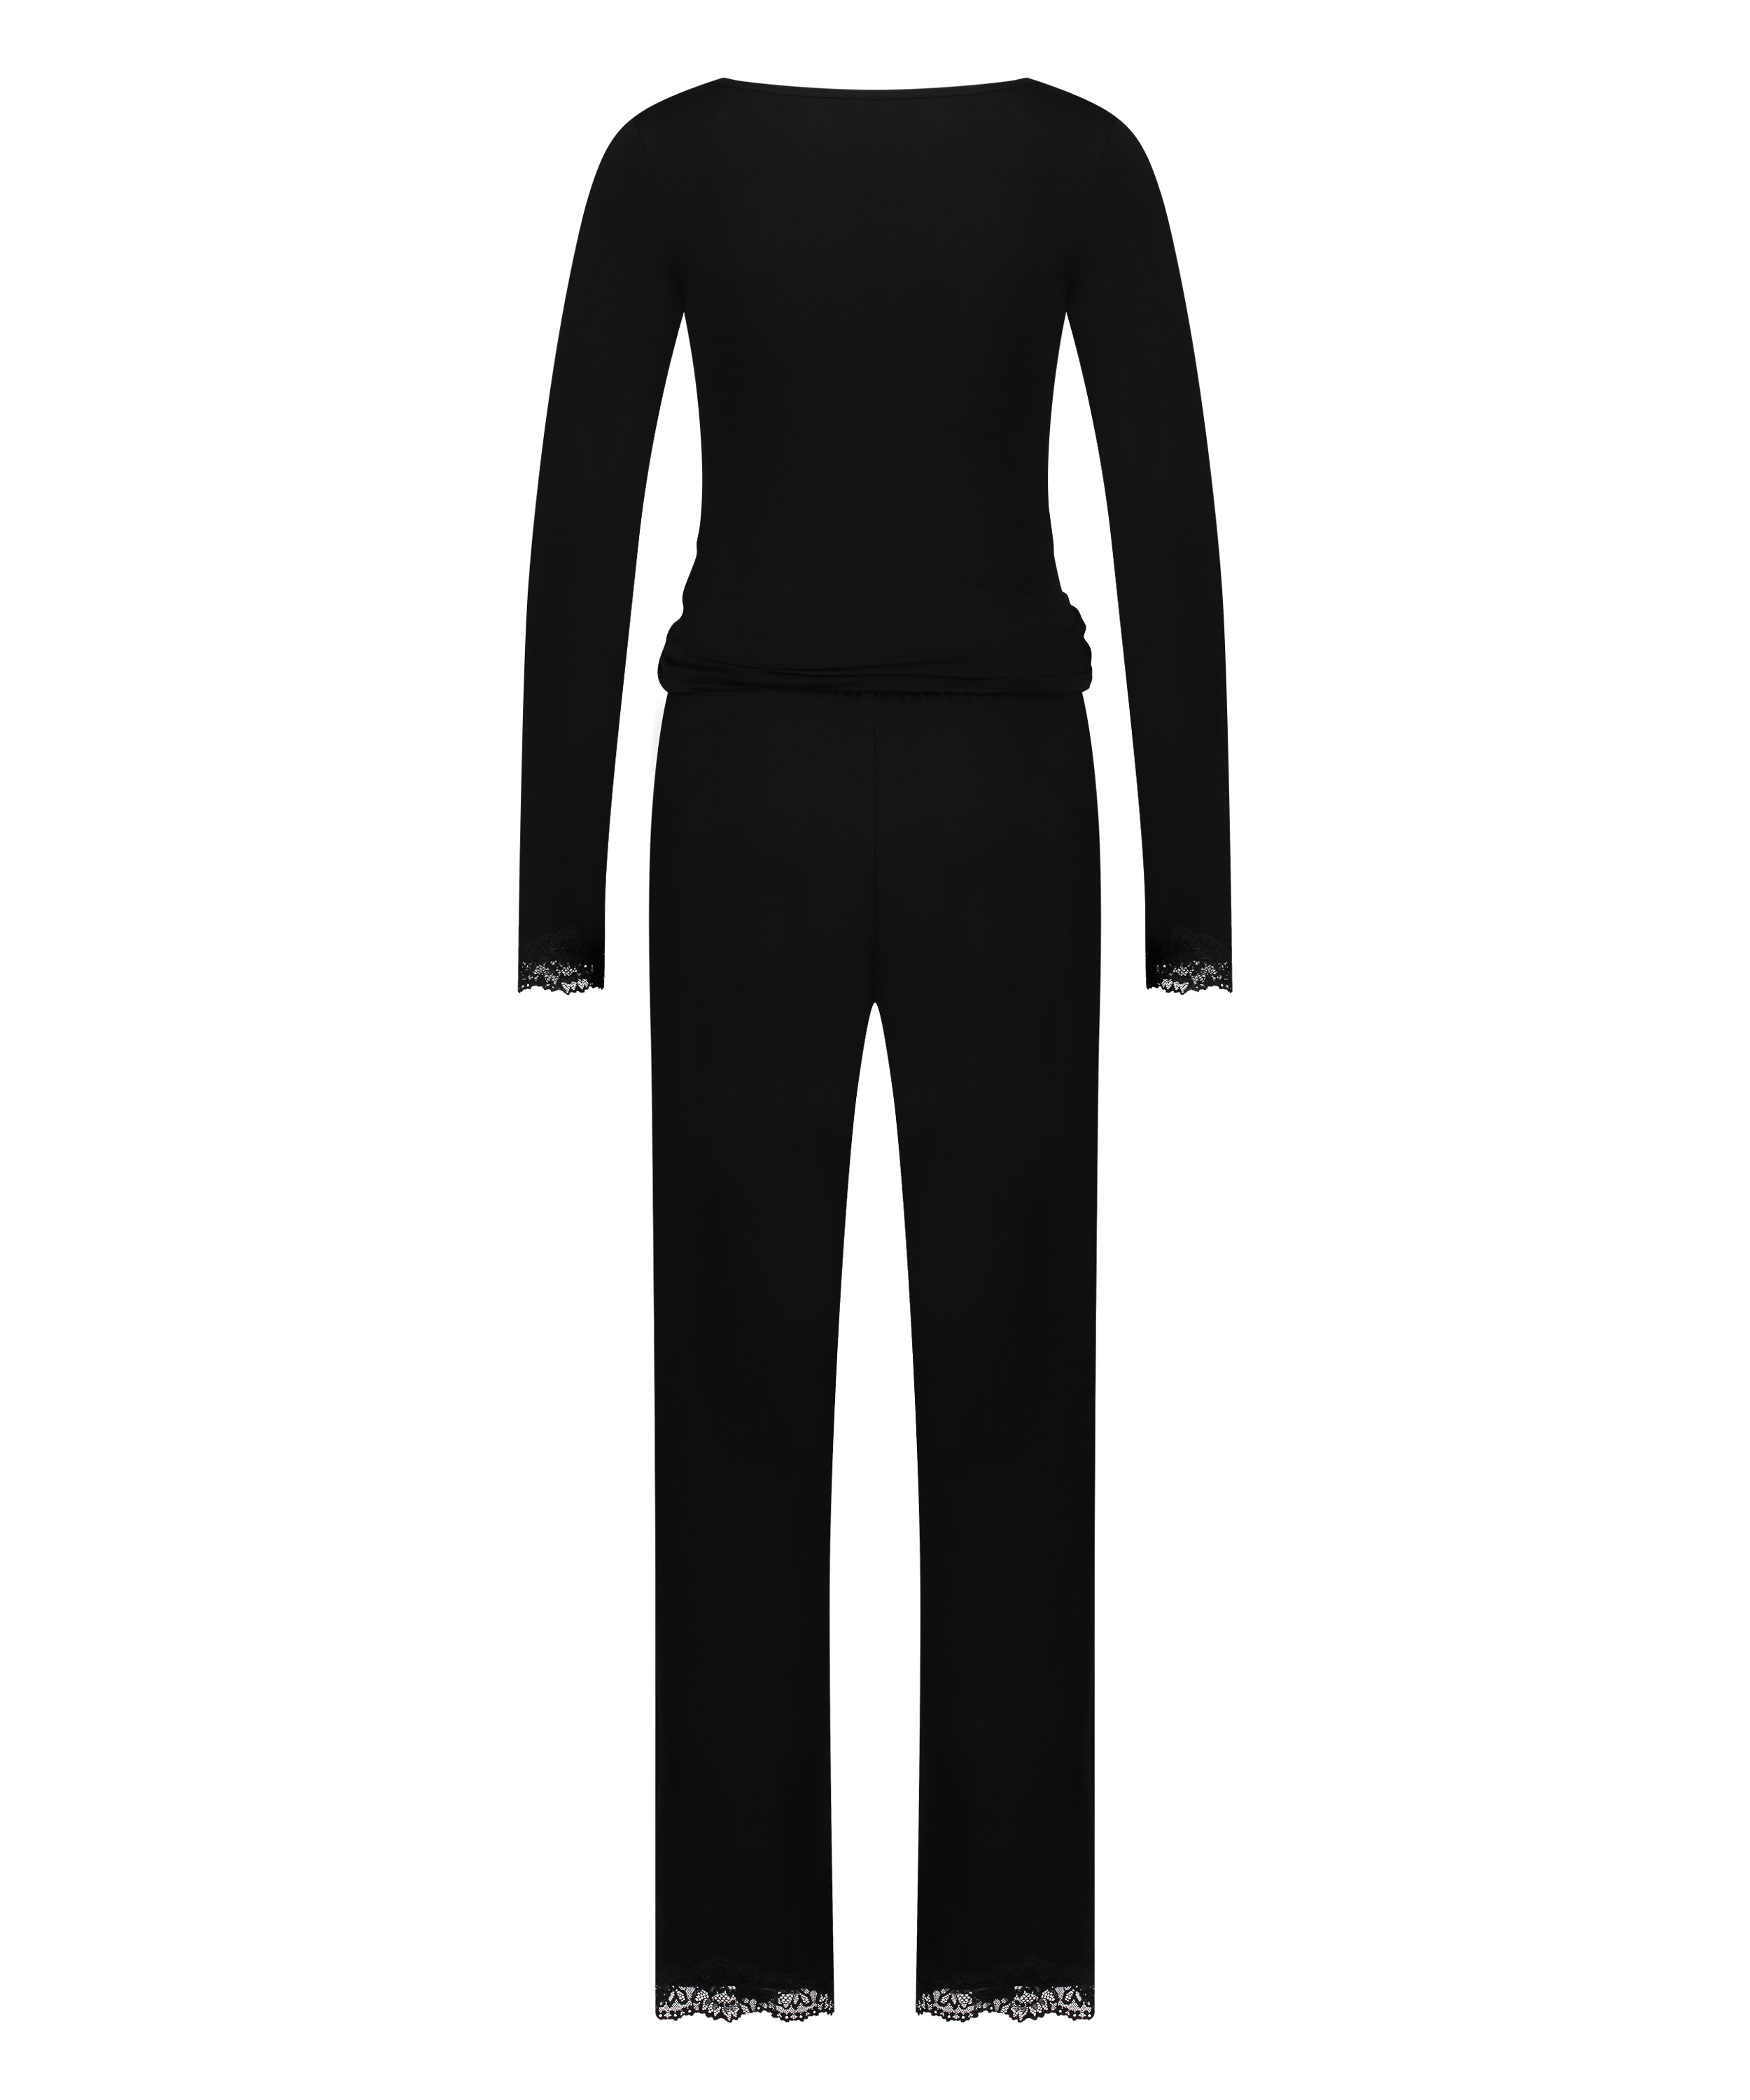 Conjunto de pijama de encaje de manga larga, Negro, main